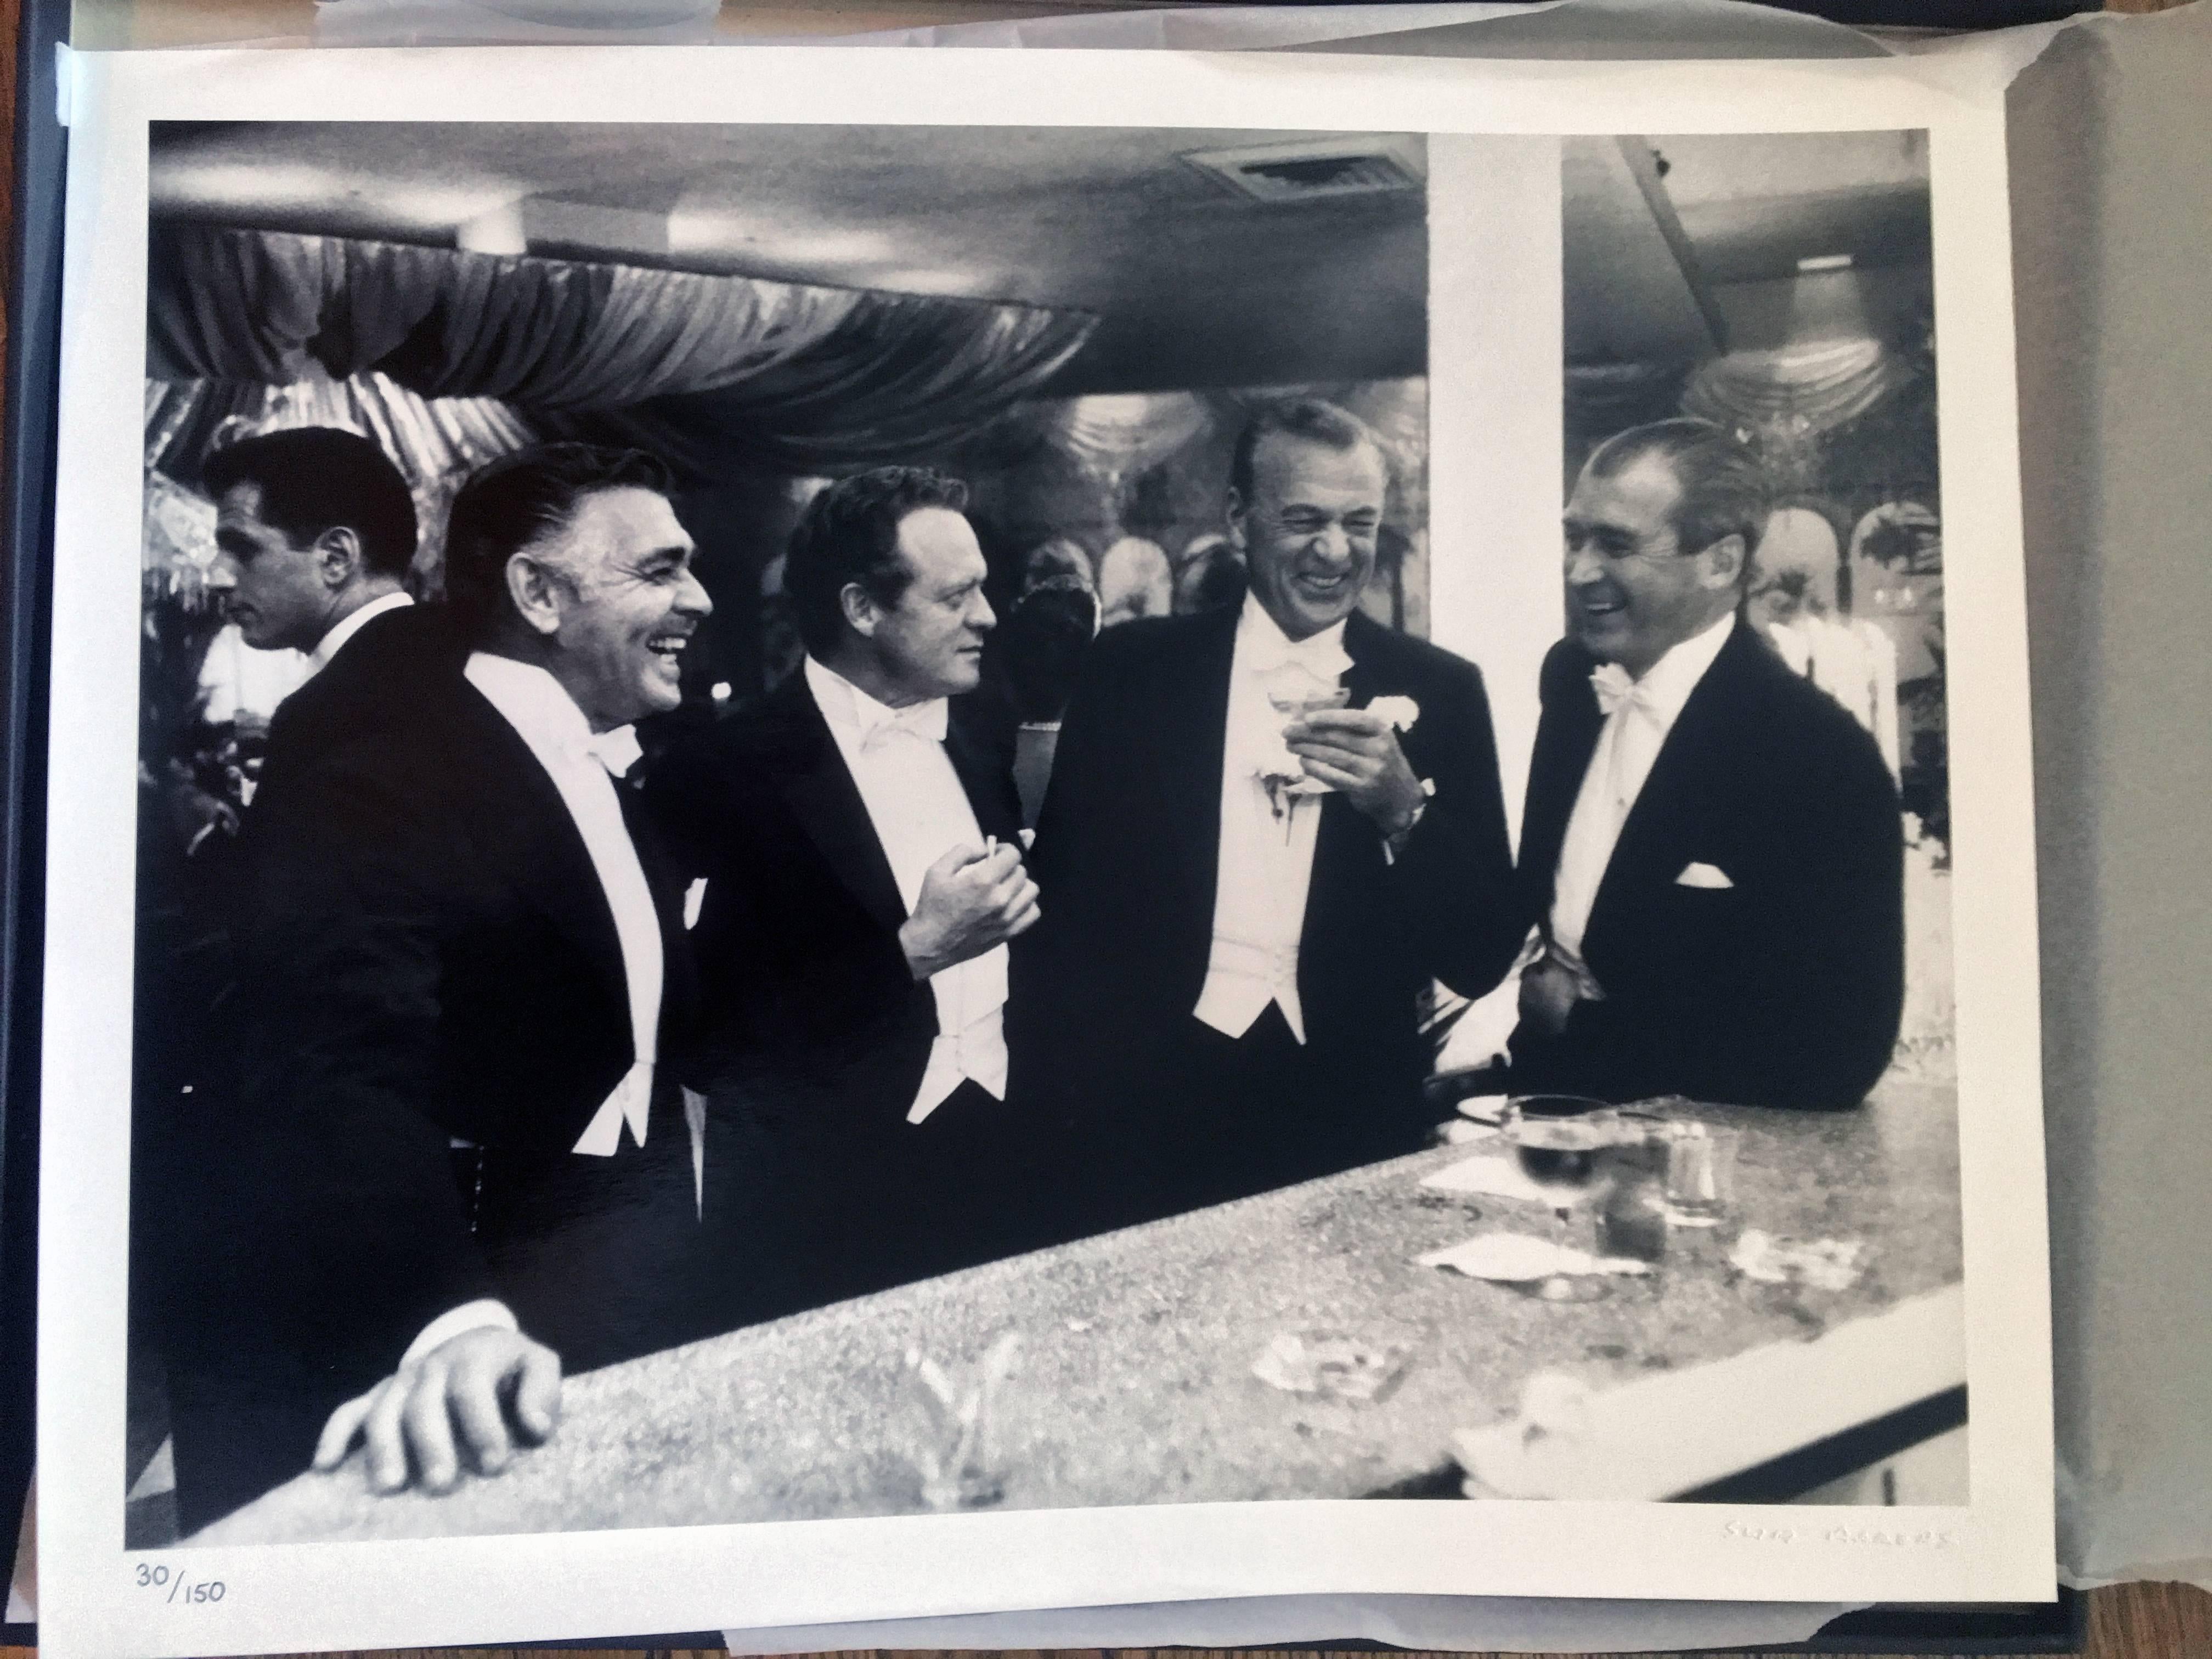 Kings of Hollywood (Clark Gable, Gary Cooper, James Stewart, Van Heflin) - Photograph by Slim Aarons